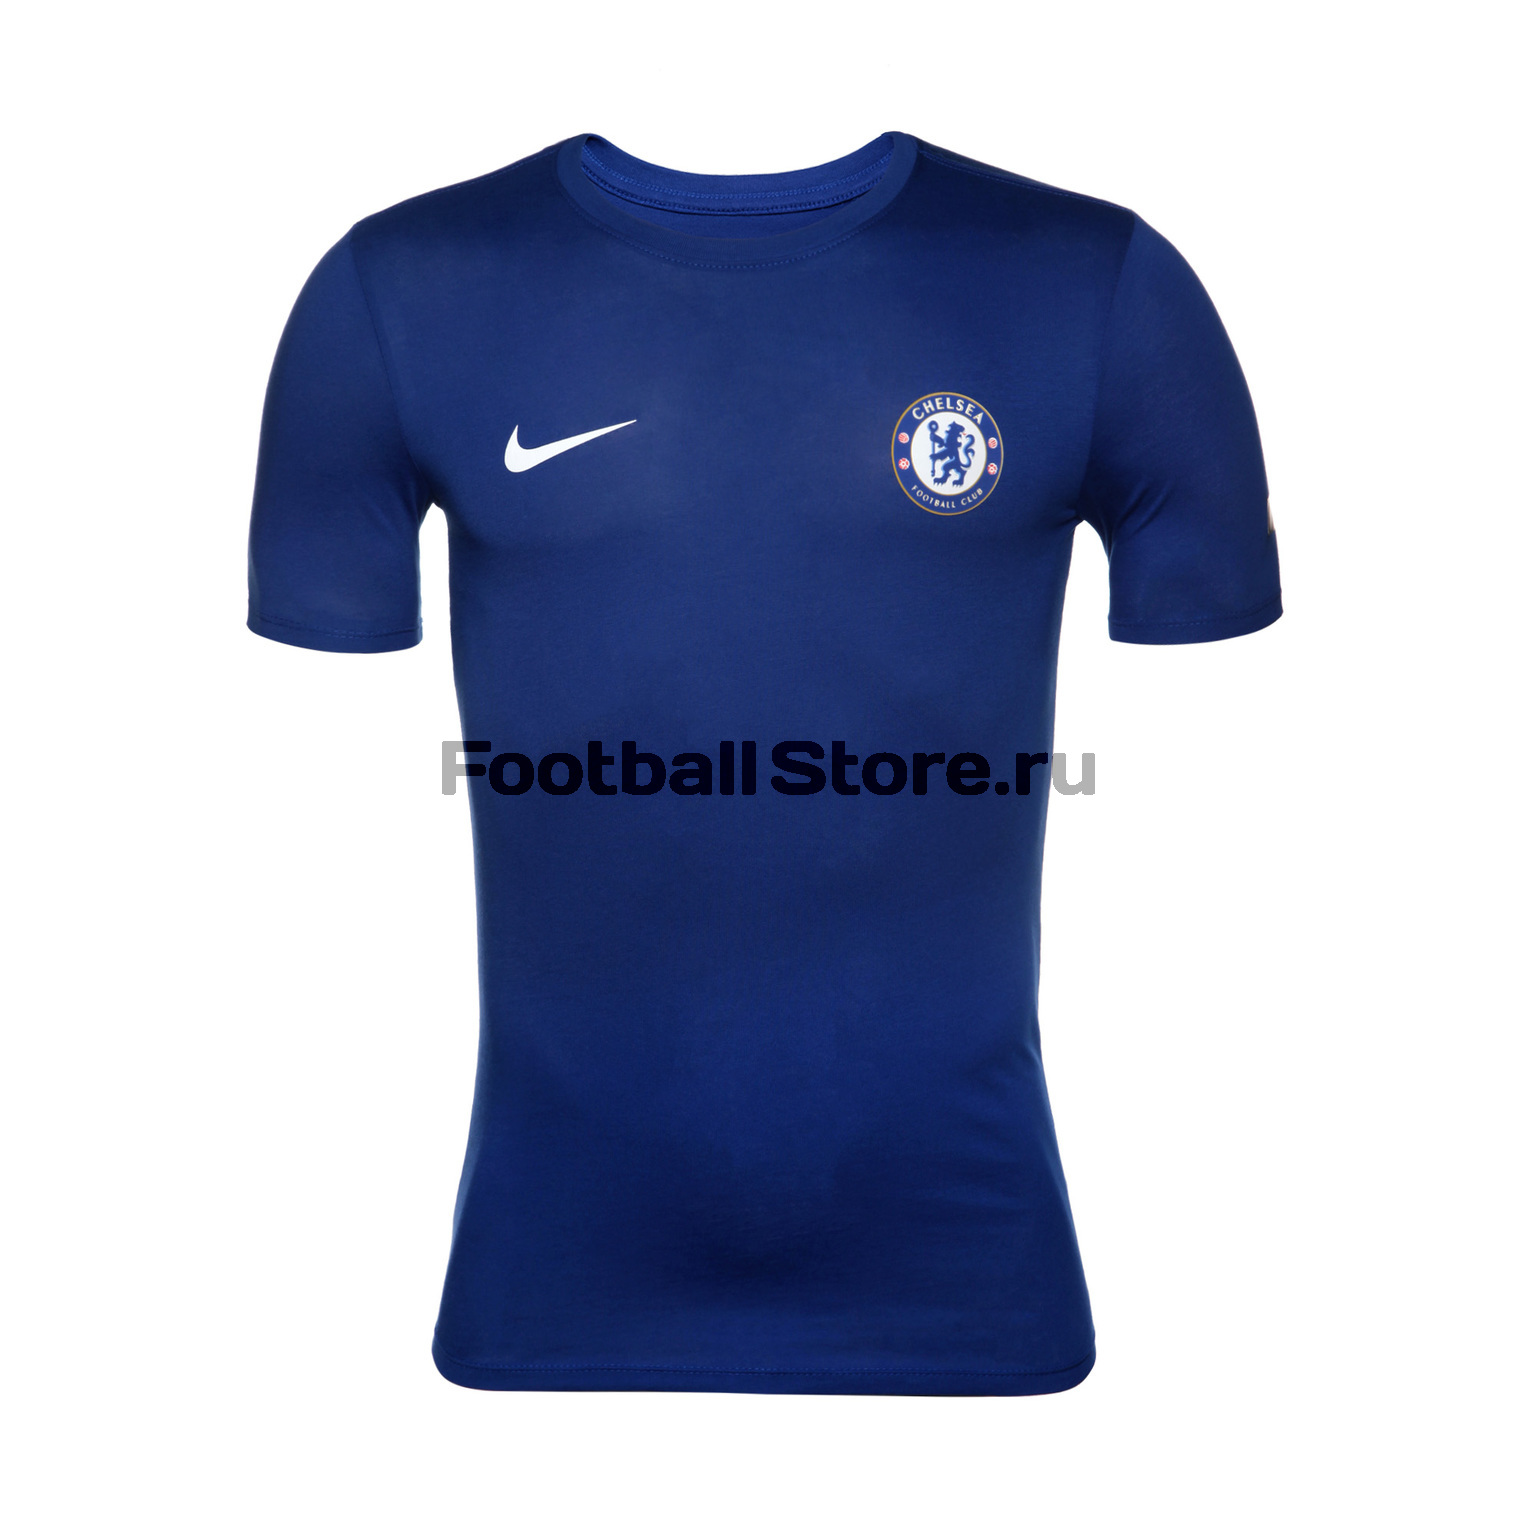 Футболка хлопковая Nike Chelsea 921760-495 